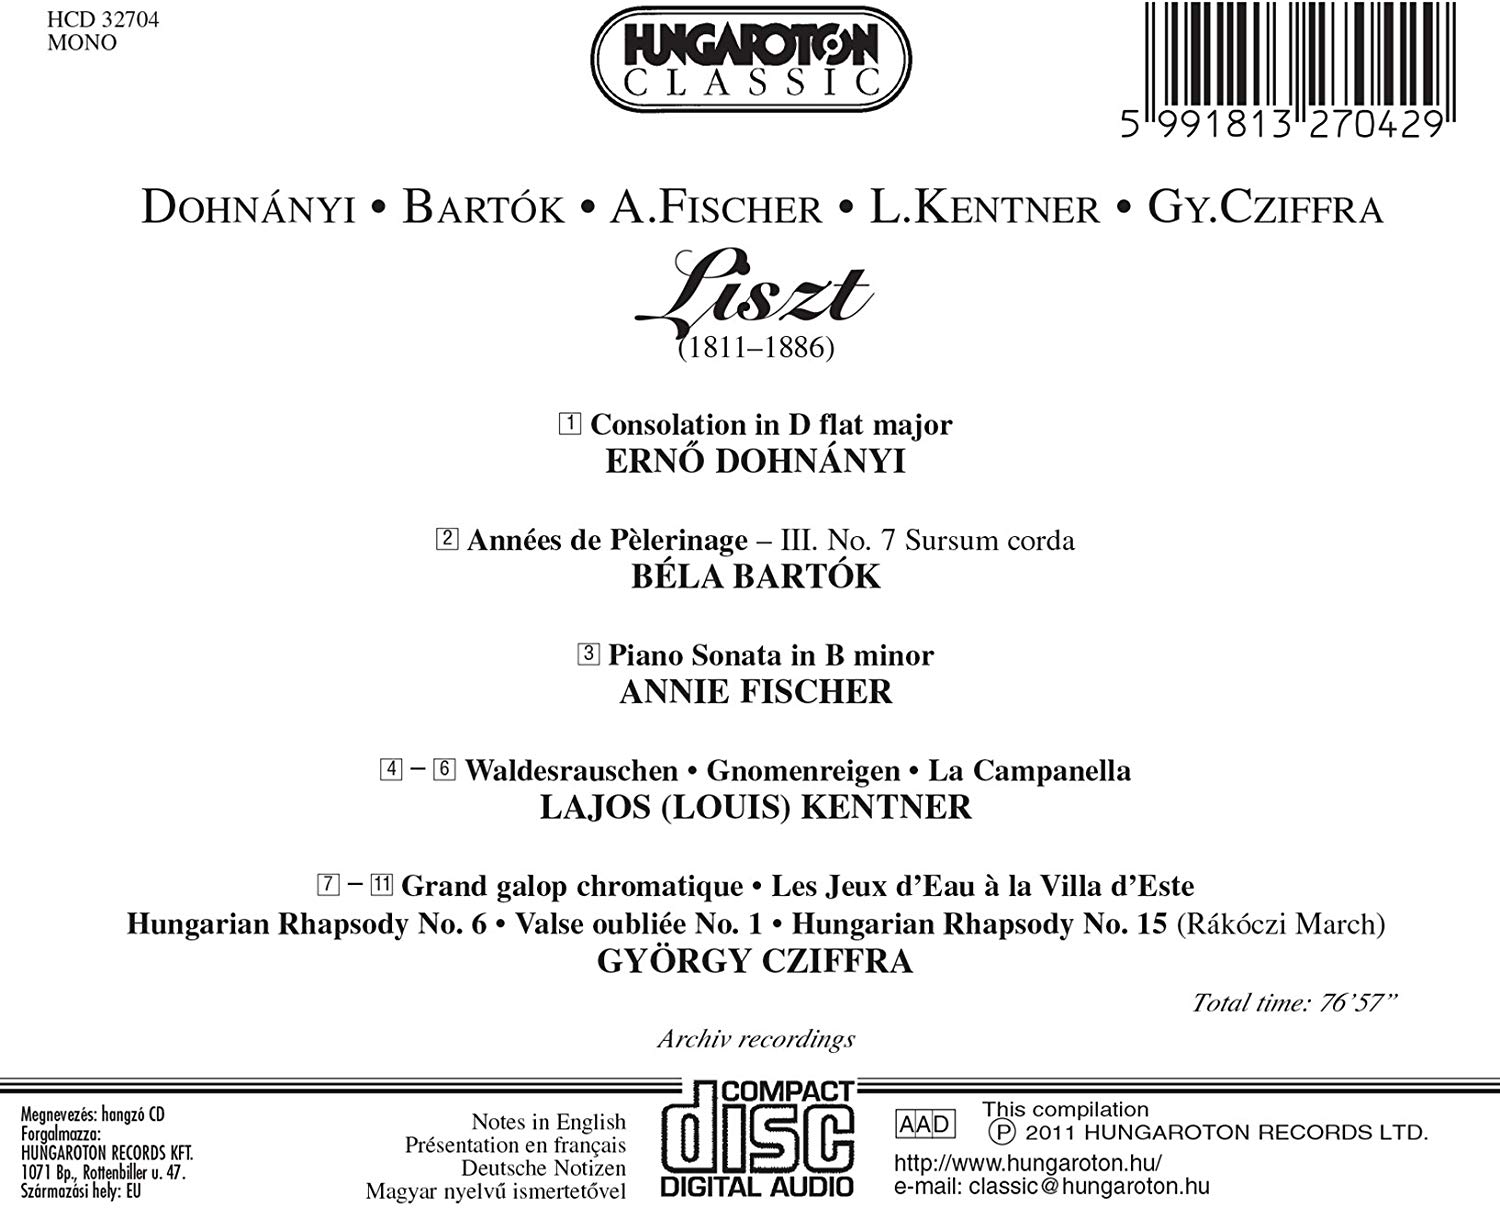 Dohnányi, Bartók, A. Fischer, L. Kentner, Cziffra play Liszt - slide-1